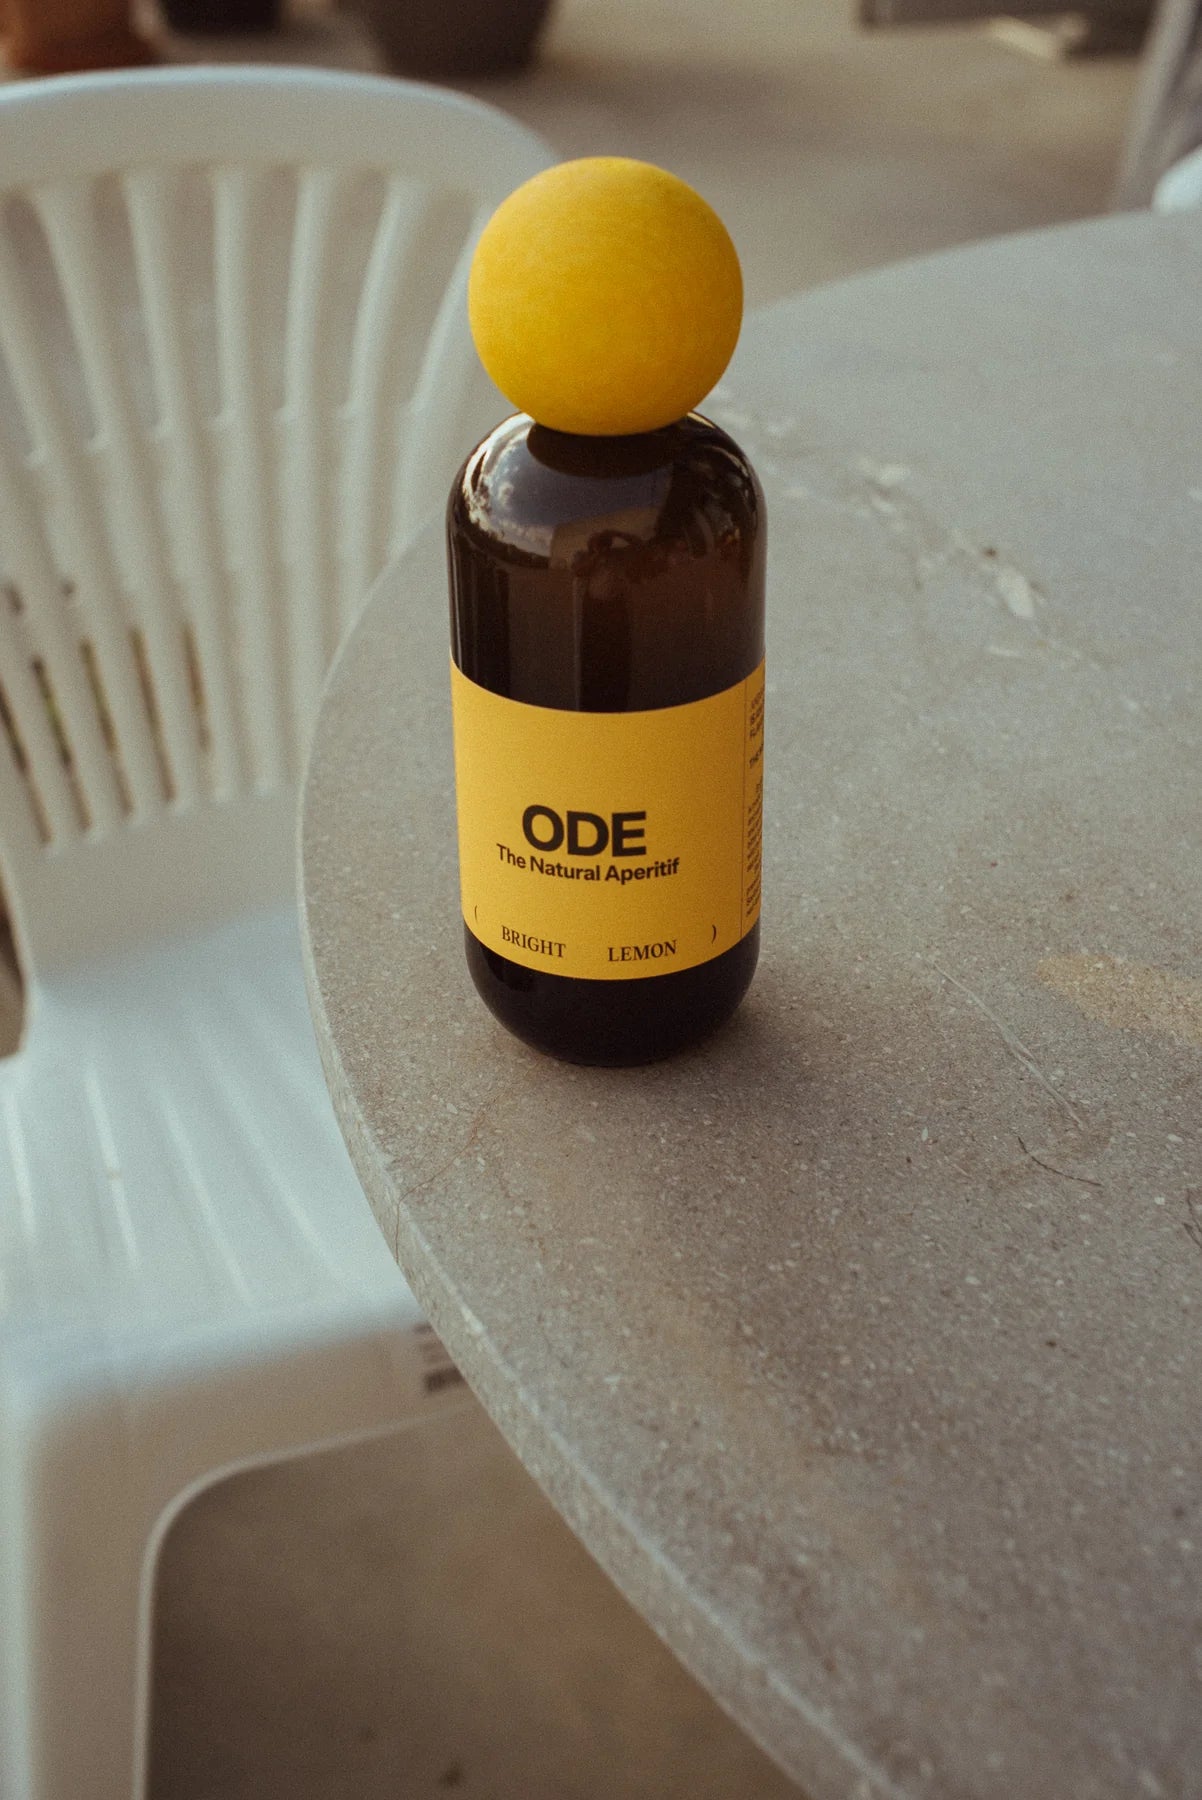 ODE Bright Lemon